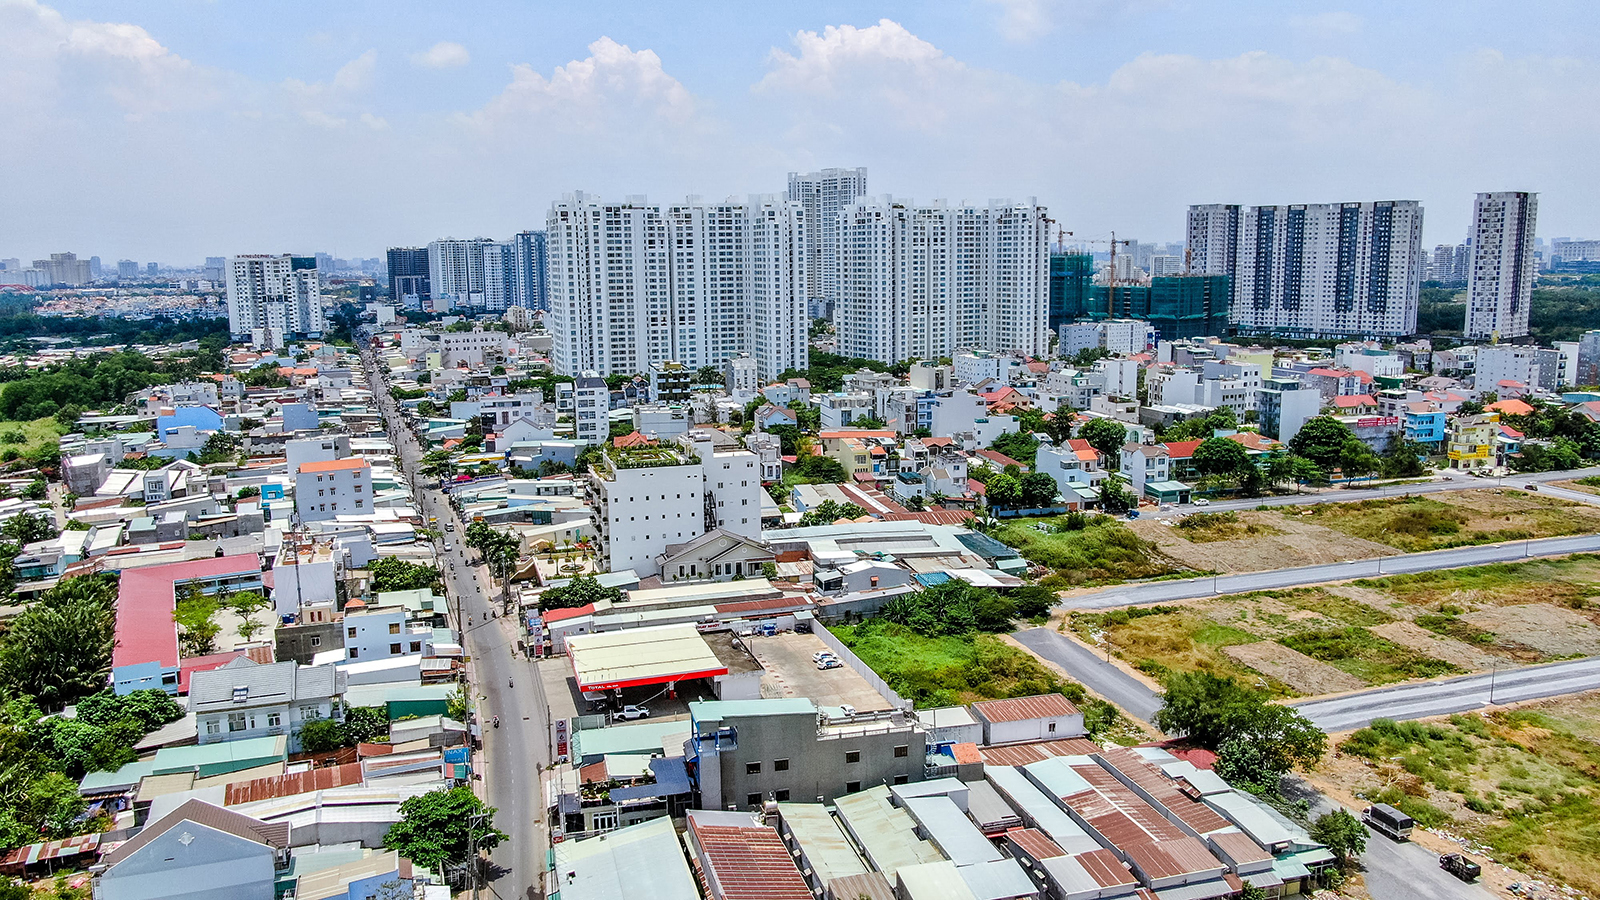 Nâng cấp hạ tầng, bất động sản vùng ven phía Nam Sài Gòn thênh thang đón sóng đầu tư